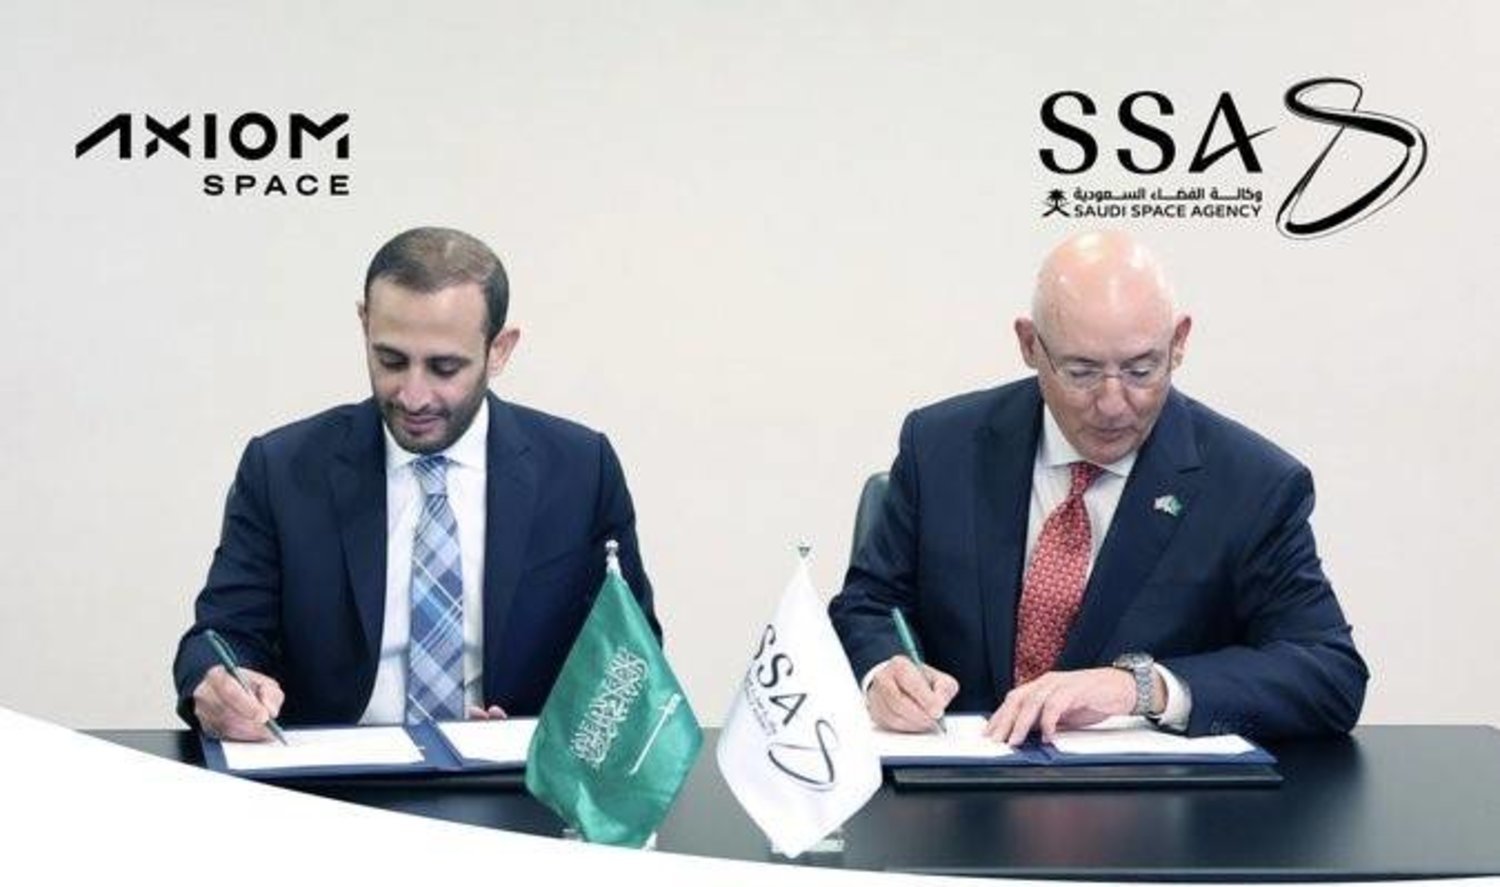 Suudi Arabistan Uzay Ajansı ile Axiom Space (Suudi Uzay Ajansı) arasında iş birliği anlaşmasına imza atıldı.